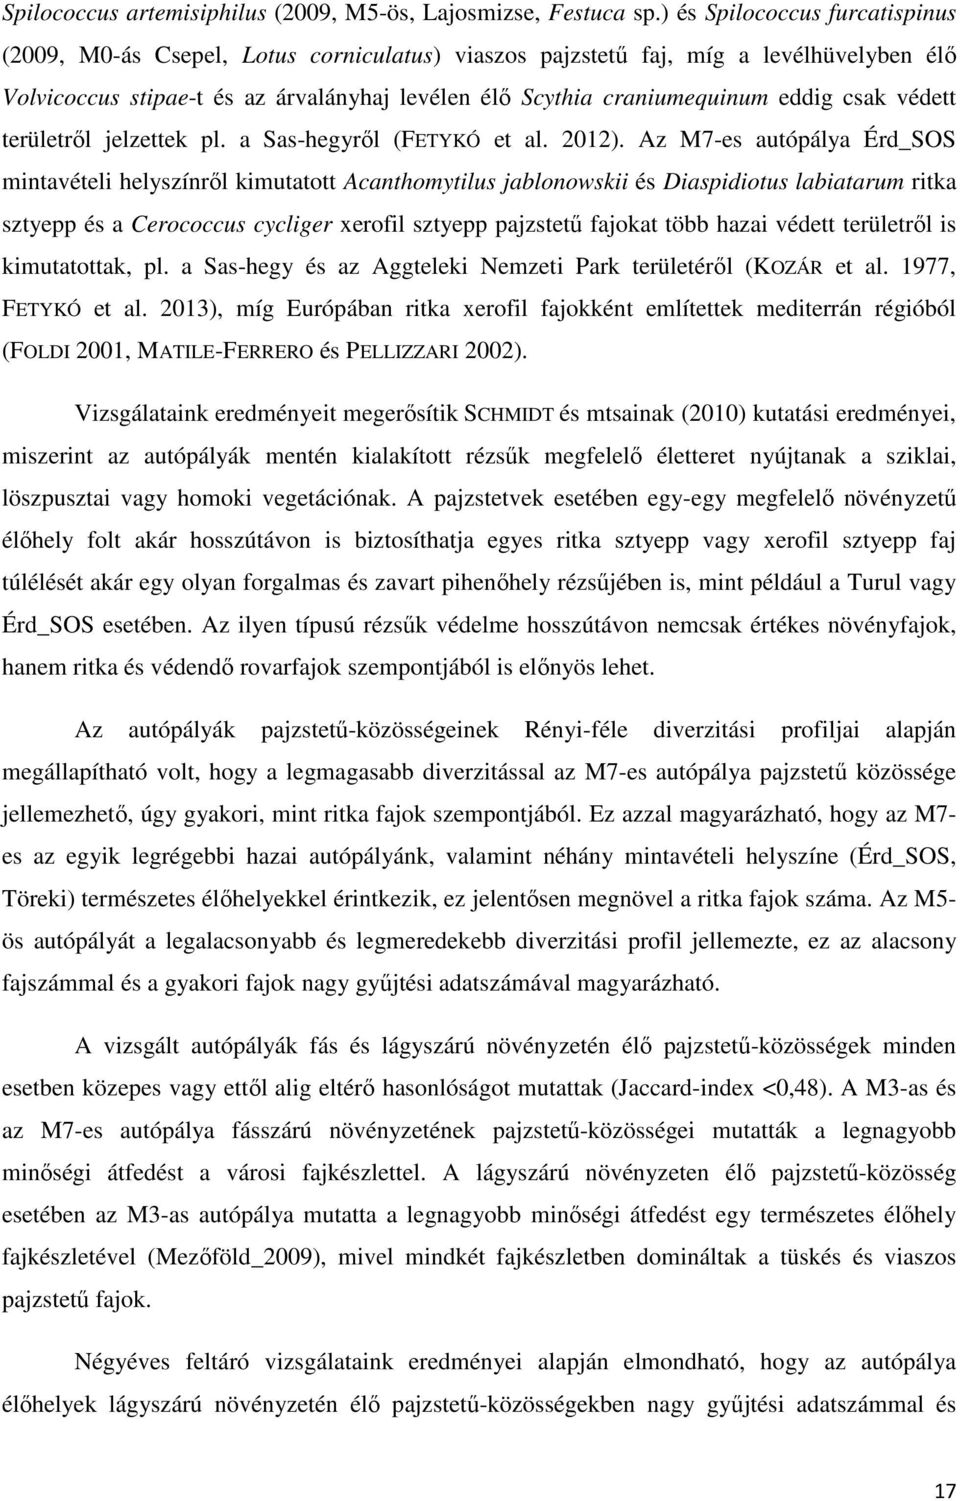 csak védett területrıl jelzettek pl. a Sas-hegyrıl (FETYKÓ et al. 2012).